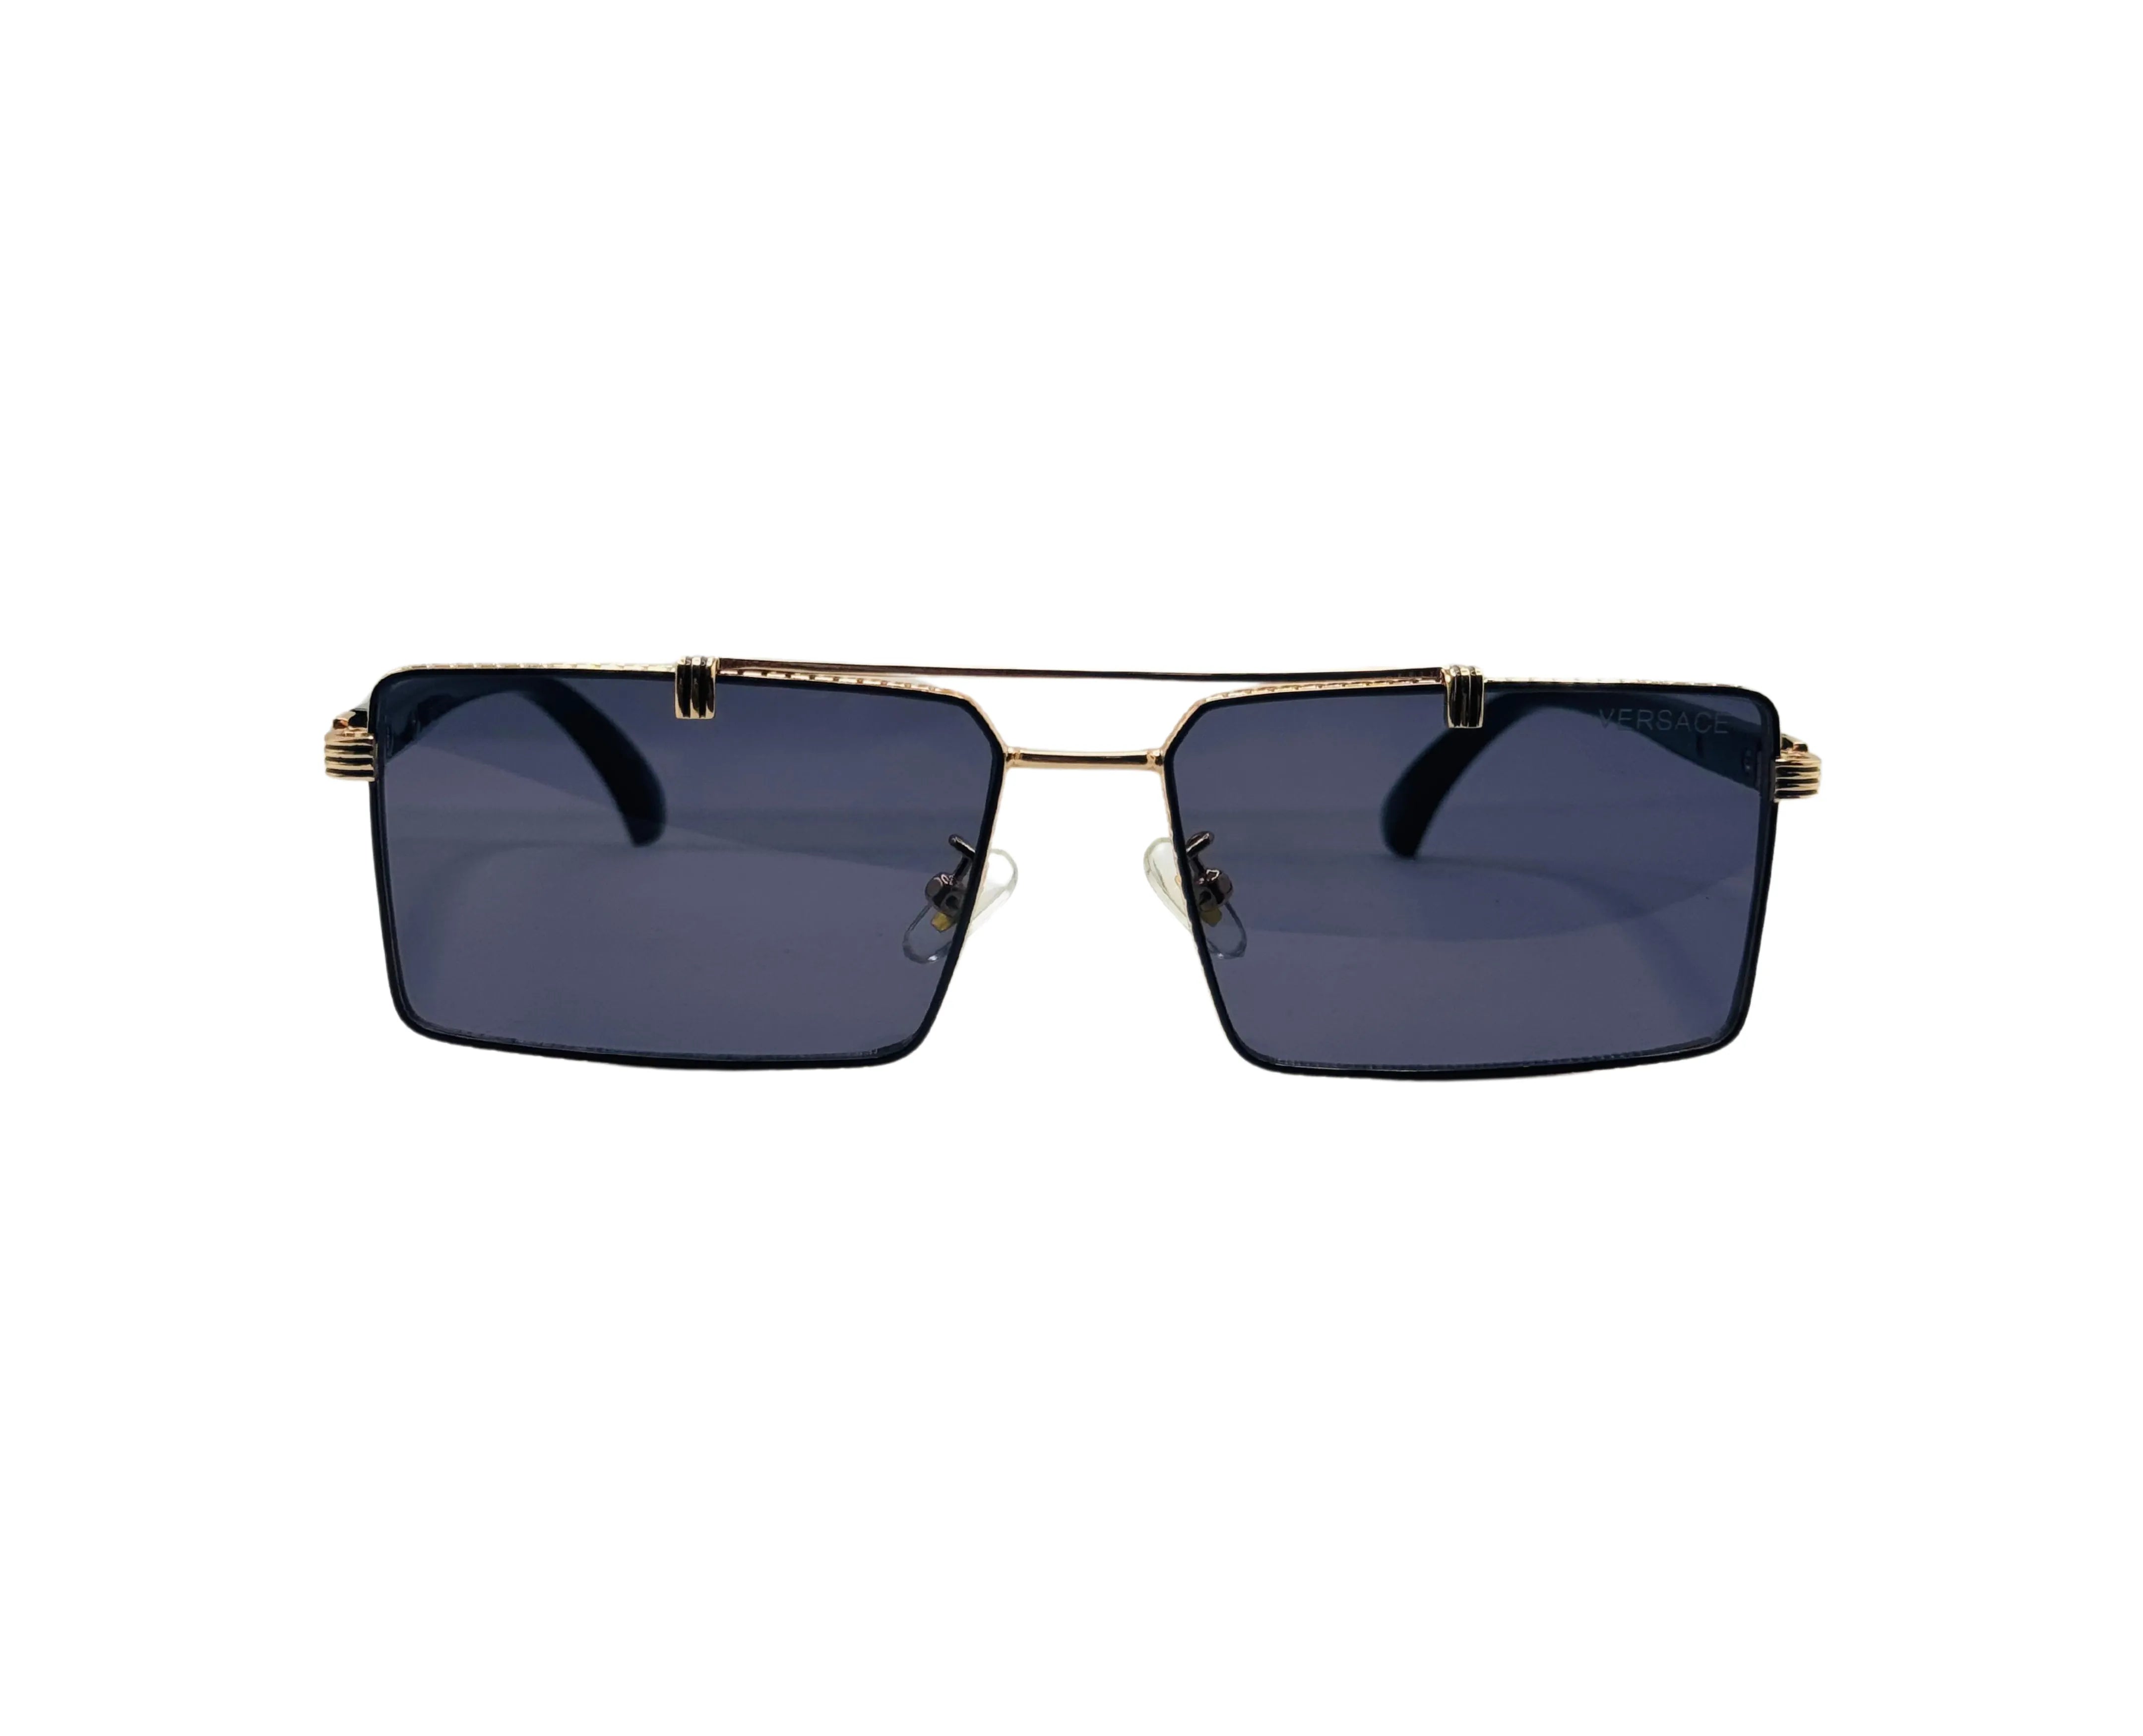 NS Deluxe - 22025 - Golden - Sunglasses